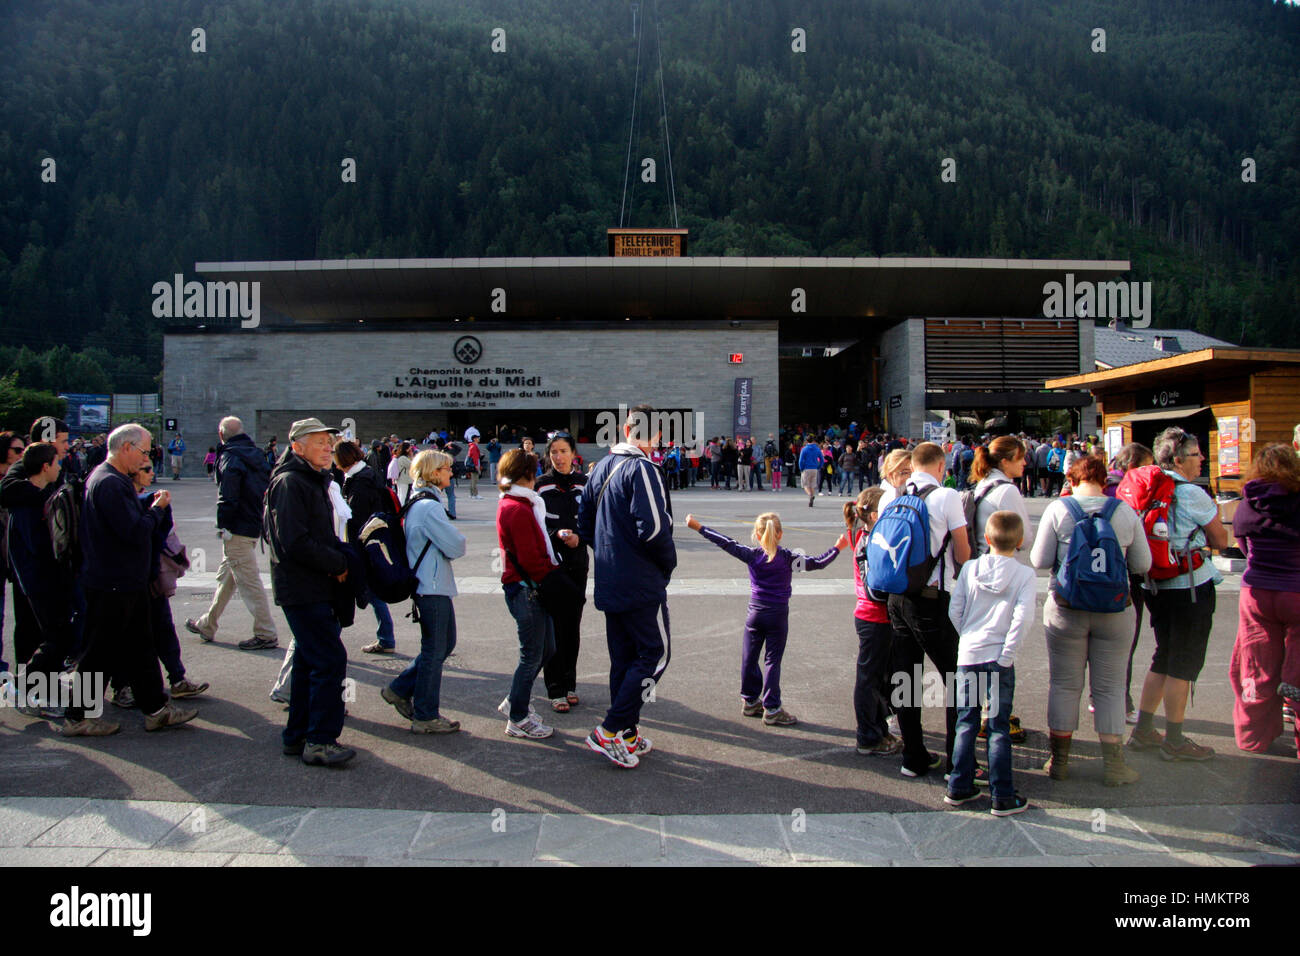 Impressionen: Seilbahn auf die Auguille du Midi, Chamonix, Frankreich. Stock Photo